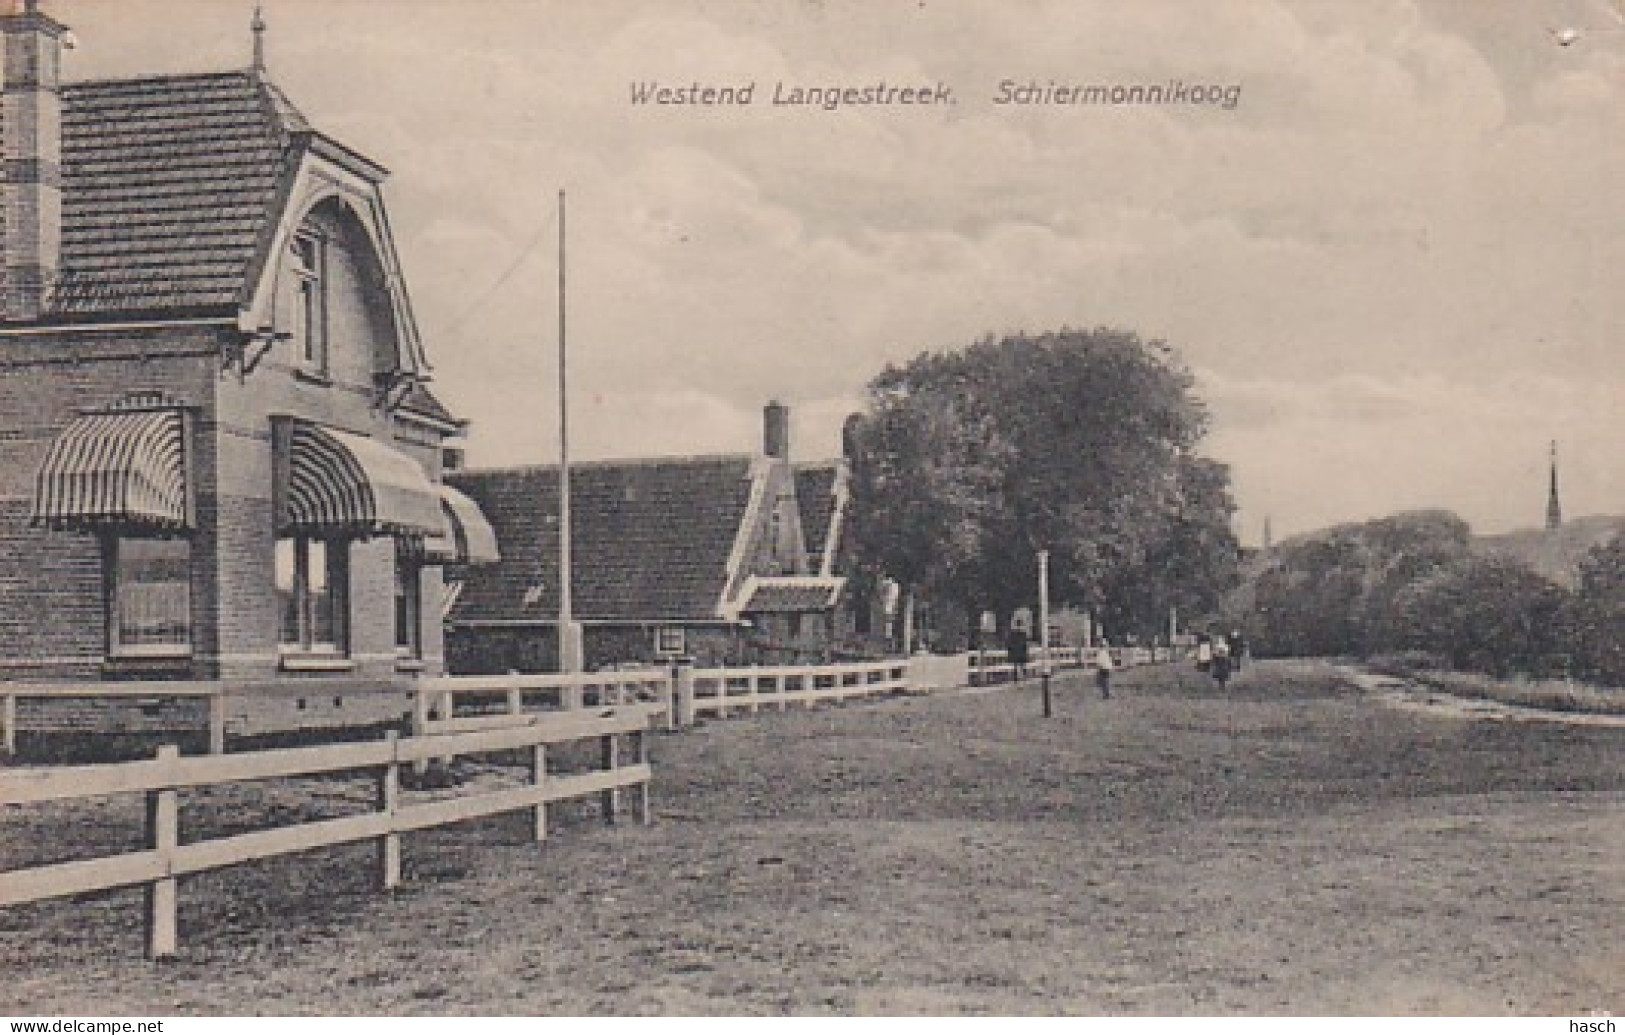 4842136Schiermonnikoog, Westend Langestreek. (in De Hoeken Punaisegaatjes) - Schiermonnikoog